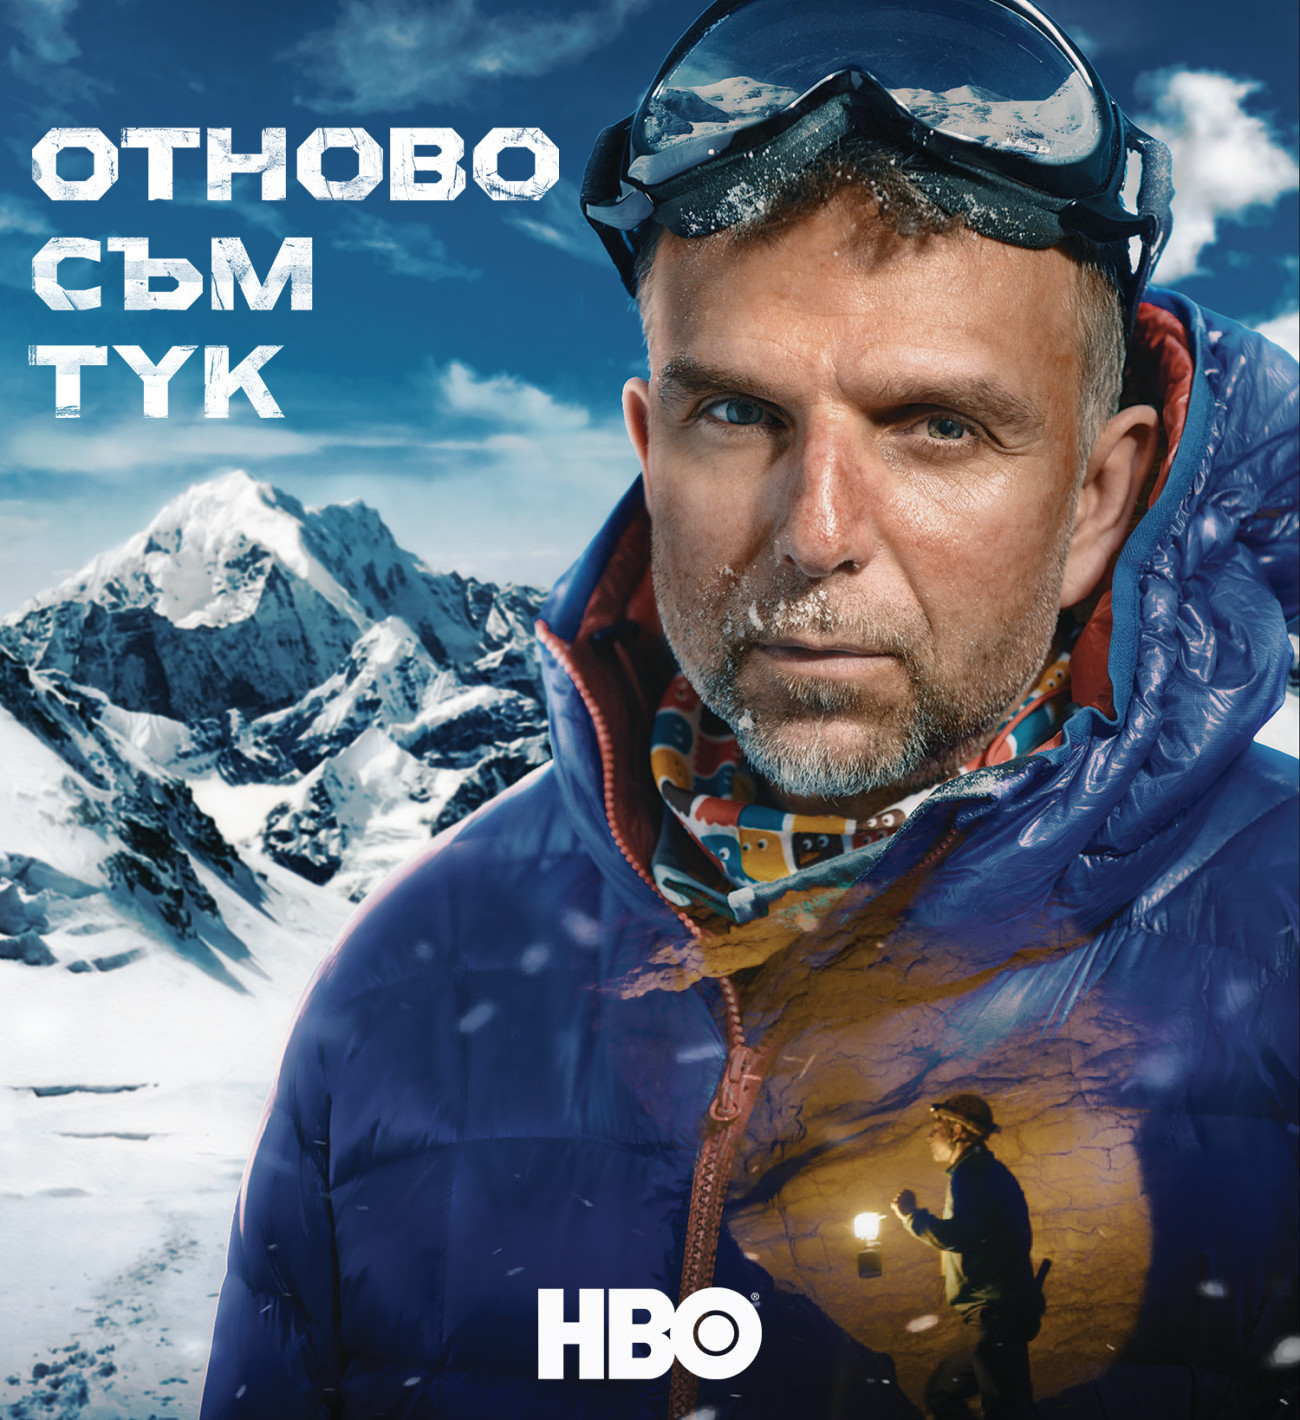 „Отново съм тук“ с премиера на 3 март по HBO По-късно през март филмът за Боян Петров ще е достъпен за гледане в 12 европейски държави в платформата HBO Max